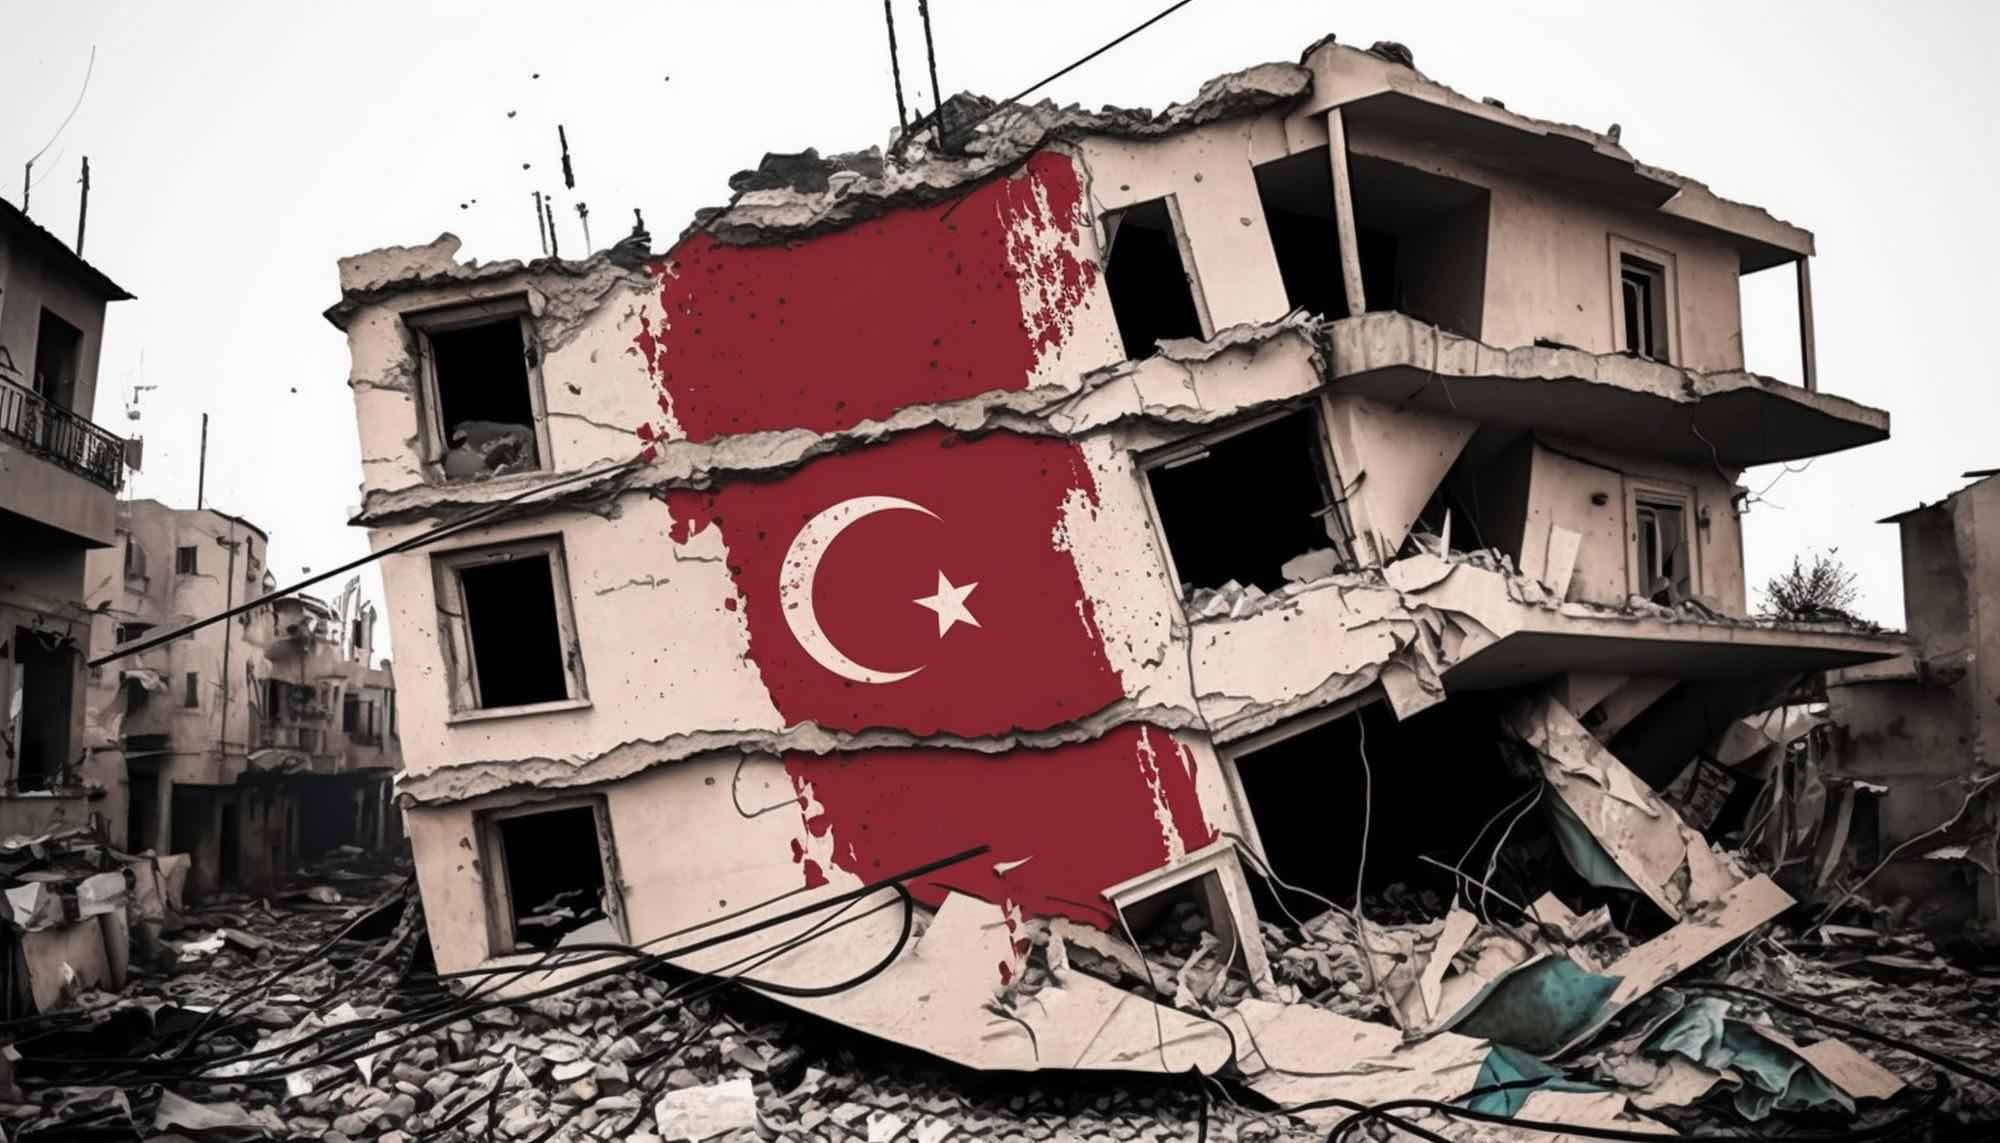 أزمة اقتصادية متفاقمة في تركيا: انهيار غير مسبوق لليرة التركية بينما يختار إردوغان وزراءه